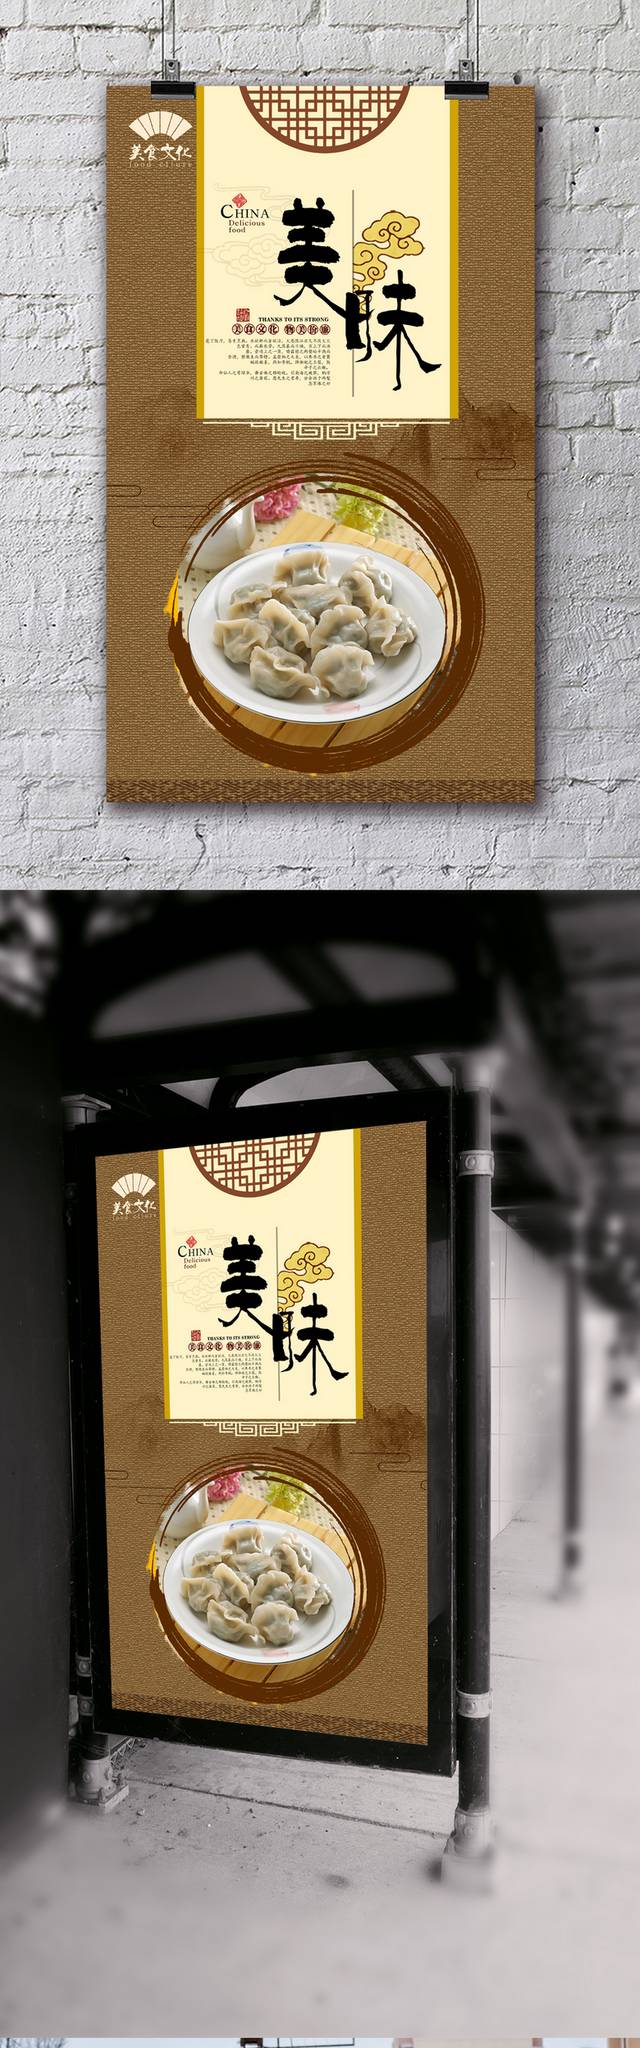 复古哈尔滨水饺宣传海报设计